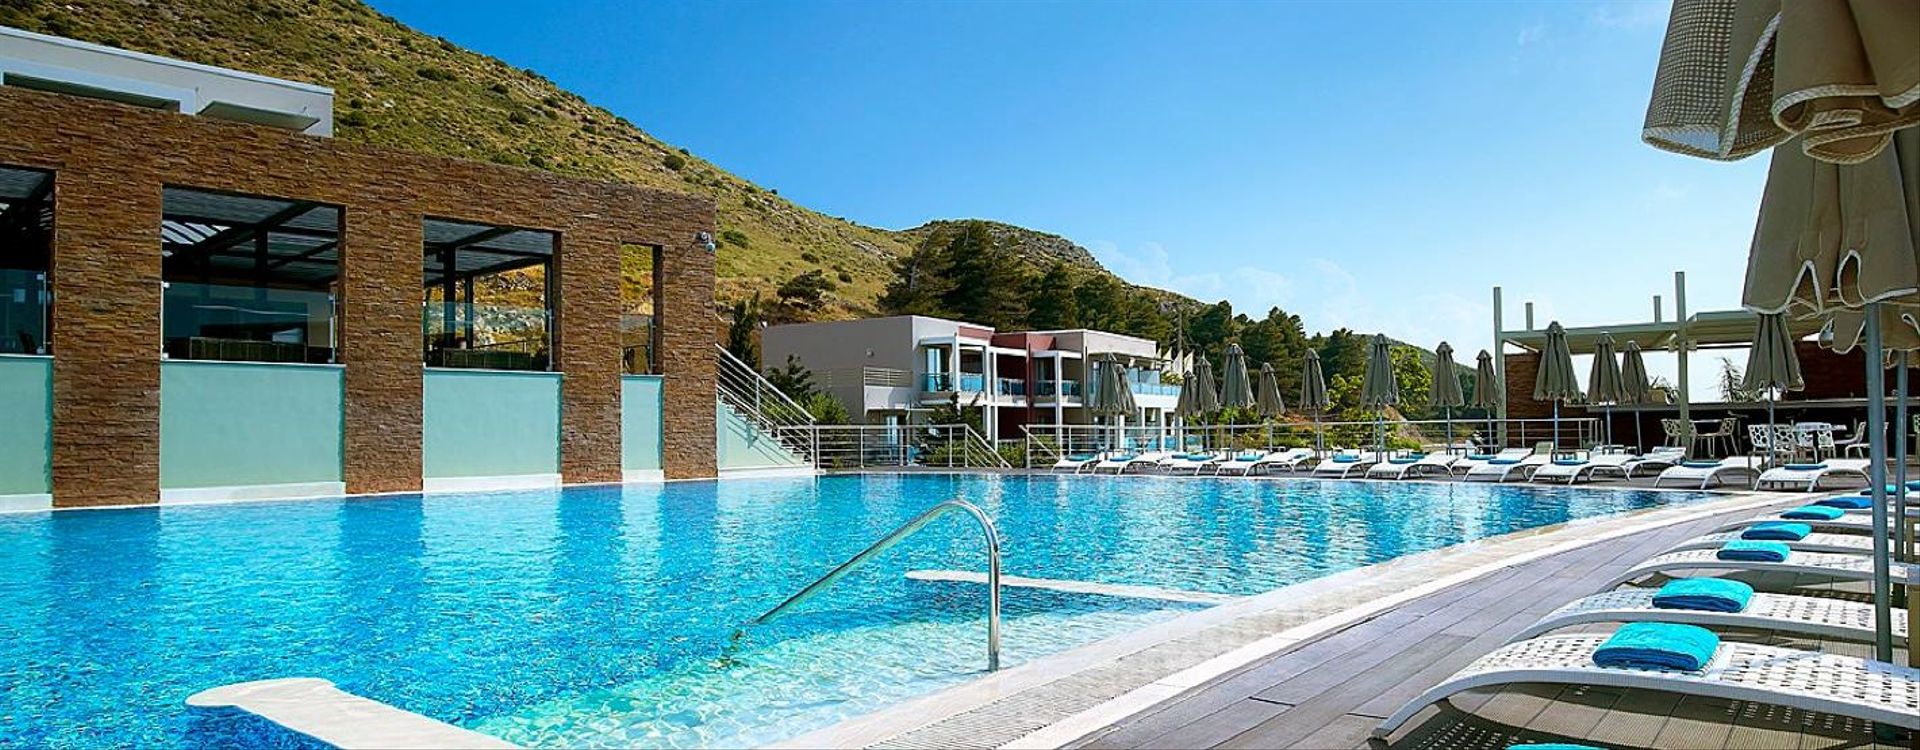 Michelangelo Resort & Spa-Pool (3).jpg